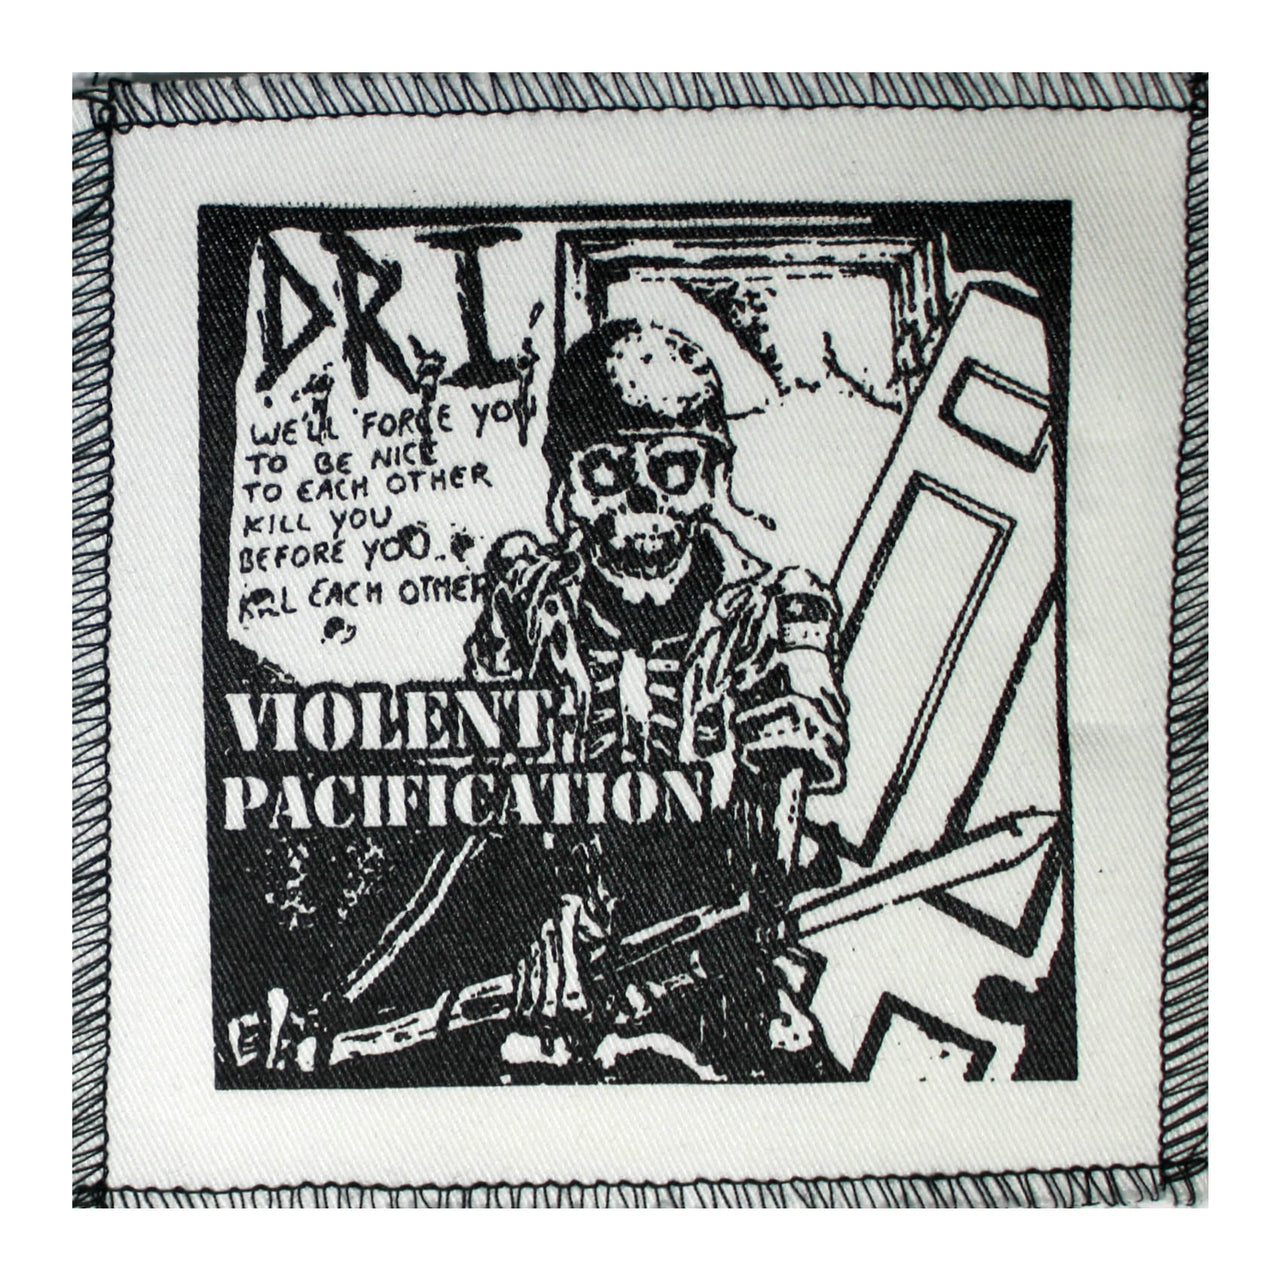 DRI Violent Pacification Cloth Patch